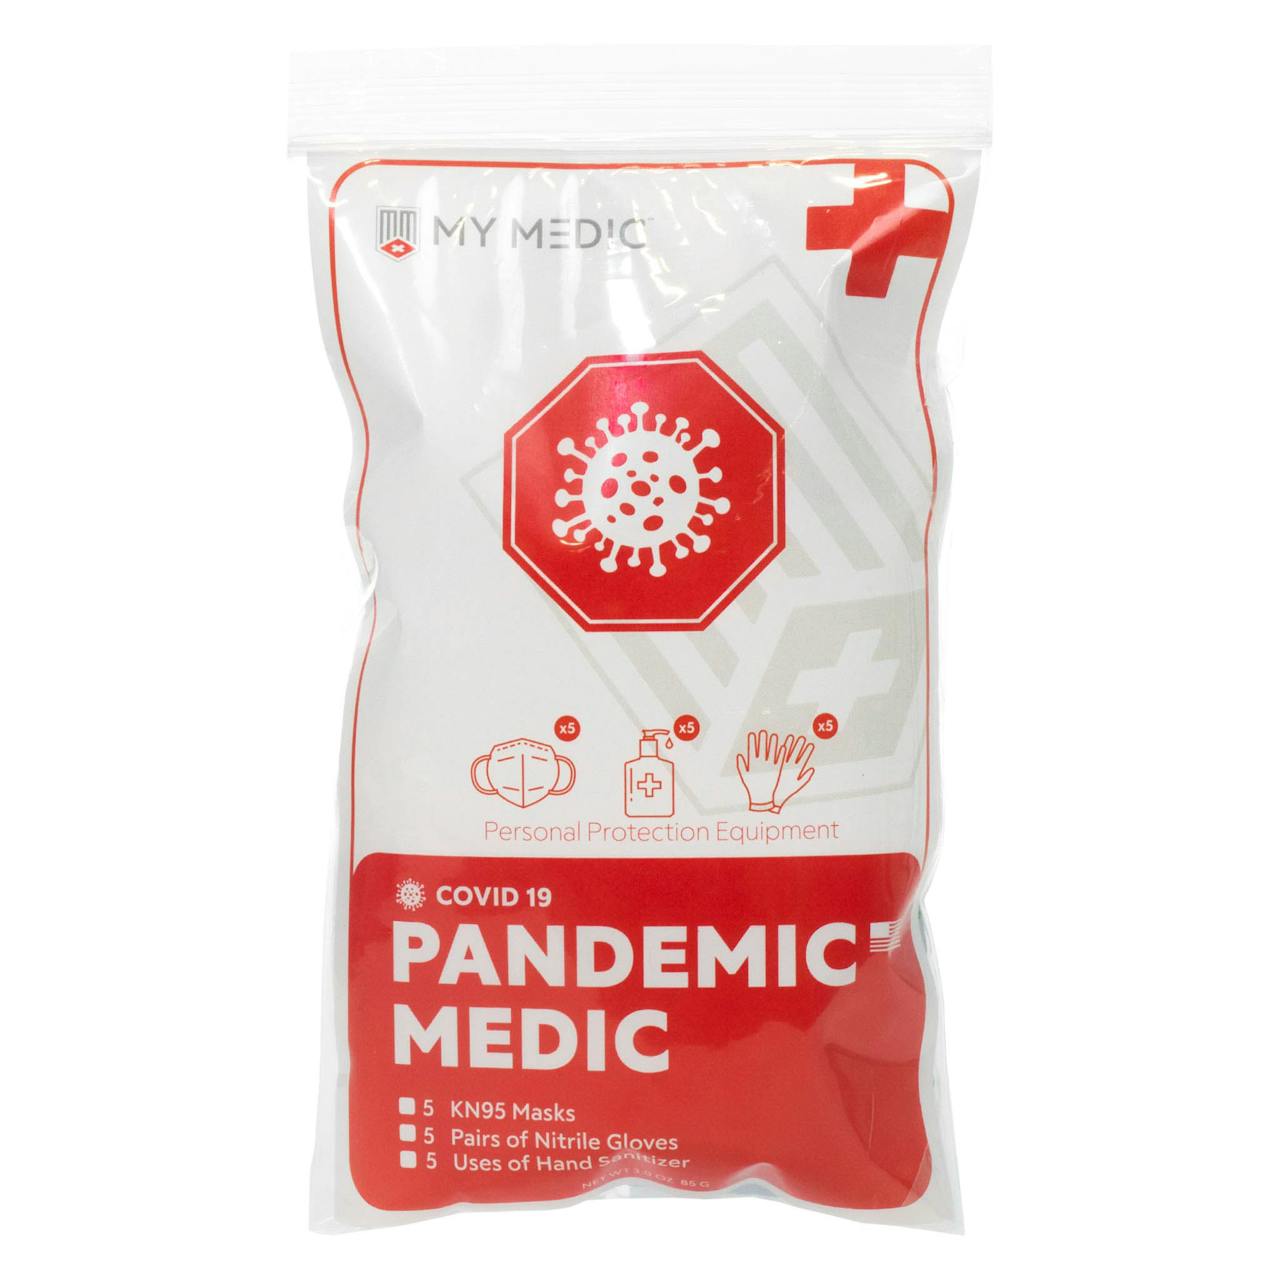 MyMedic Pandemic Medic